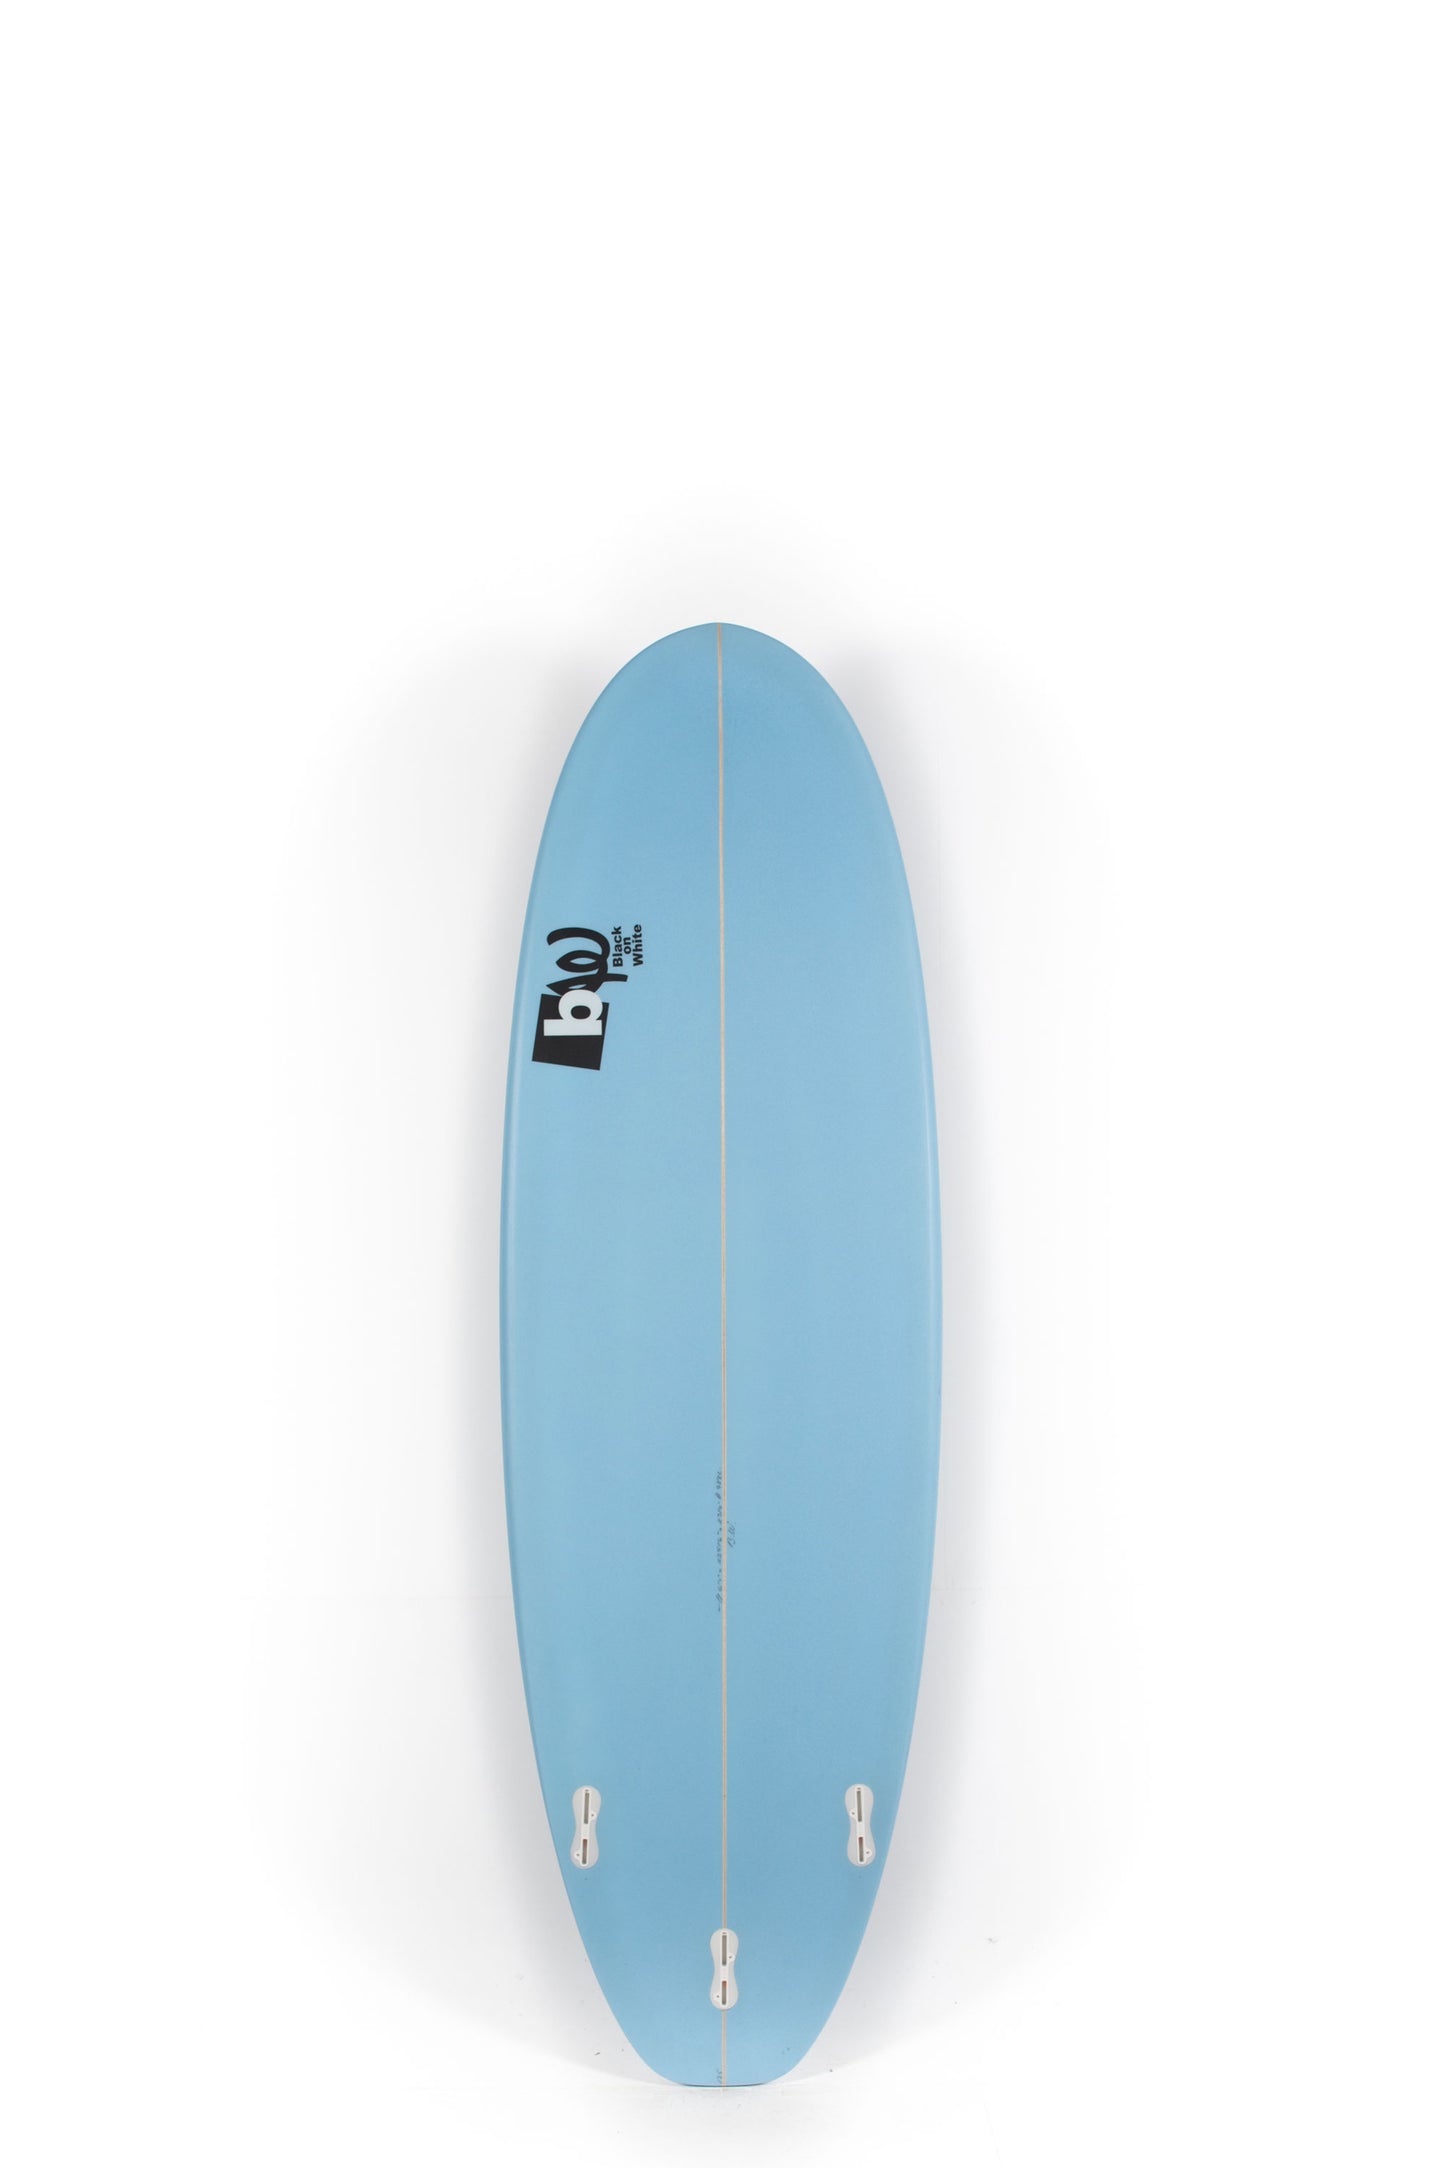 
                  
                    BW SURFBOARDS - Potato 6'4" x 22 5/8 x 2 5/8 - 47'7L - REF:175
                  
                